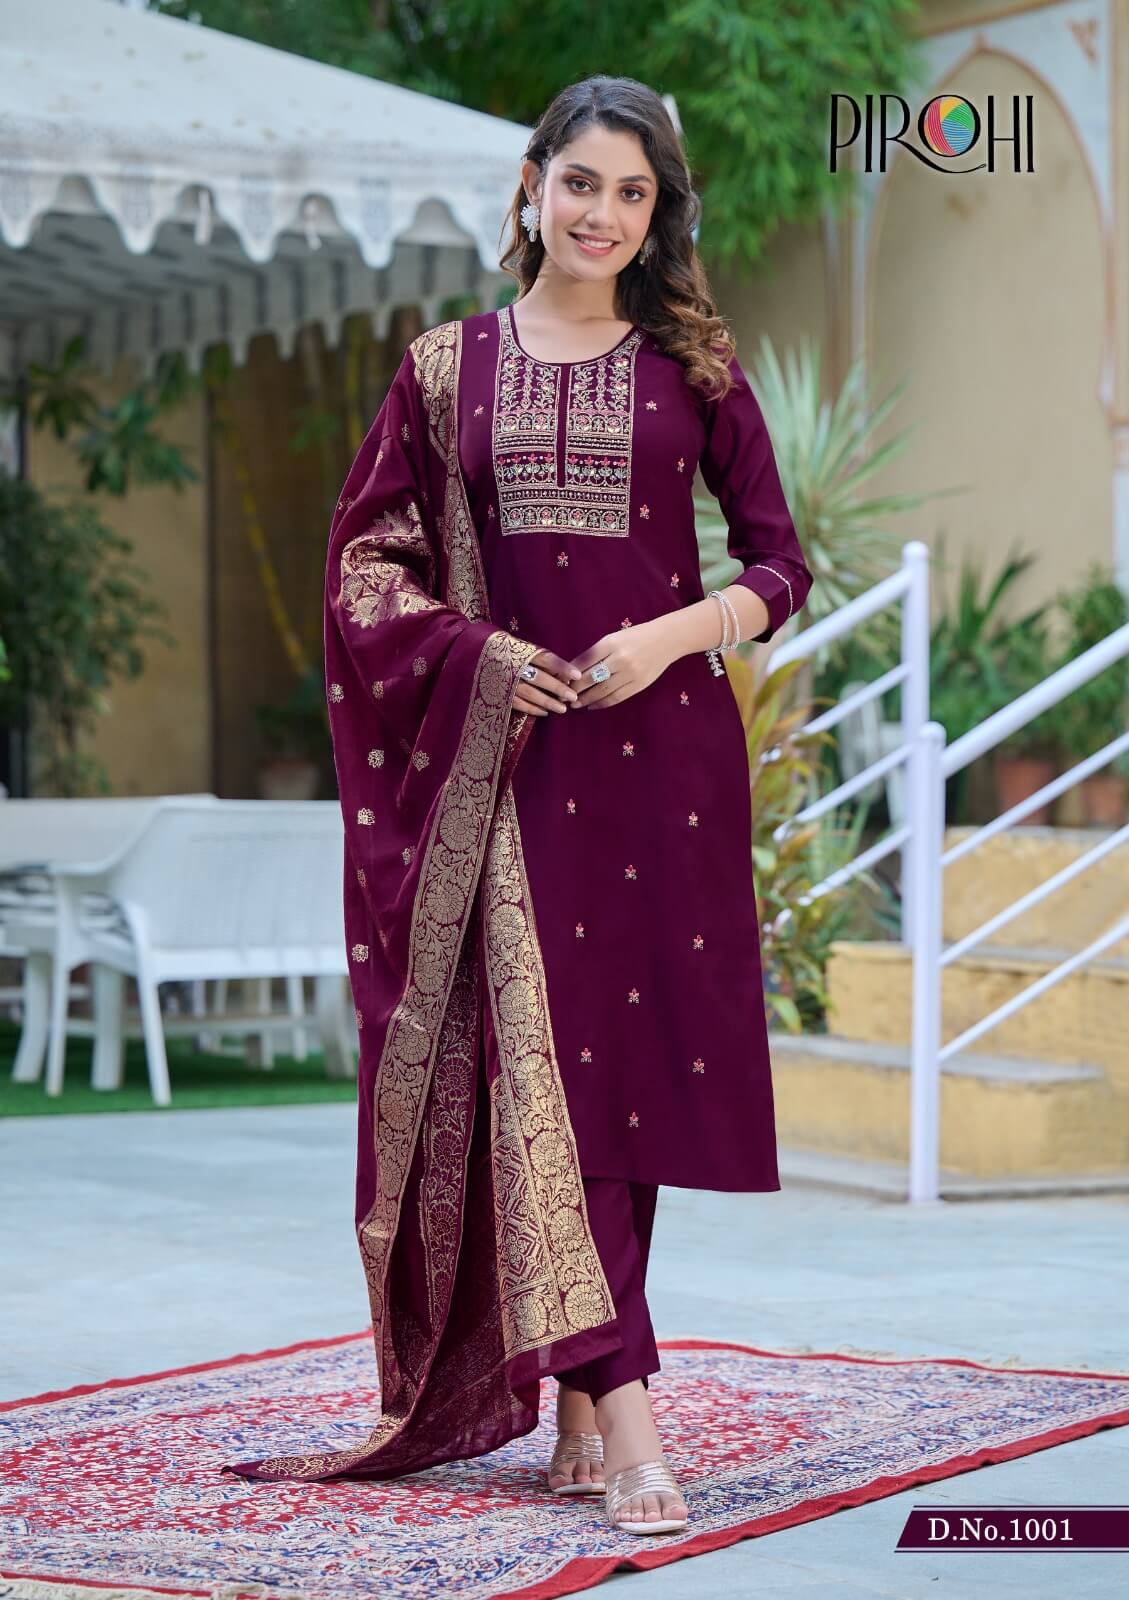 Pirohi By Rajavir Mahiye Readymade Dress Catalog collection 5